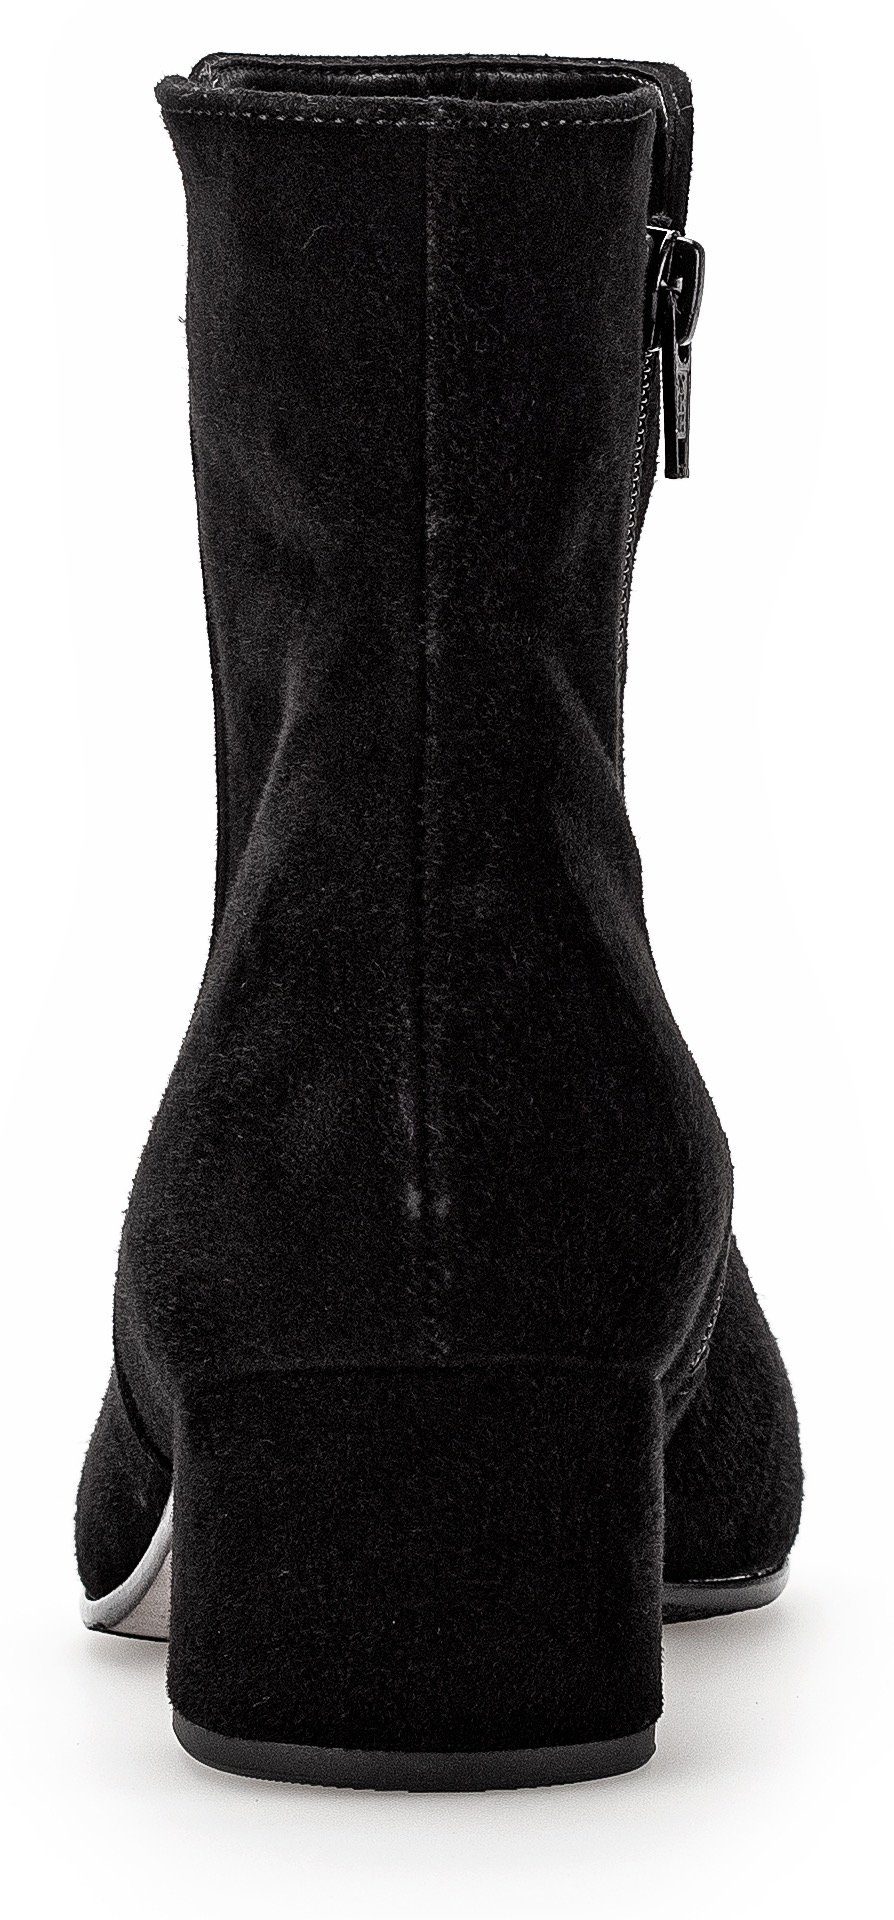 Stiefelette Gabor mit Fitting-Ausstattung Best schwarz